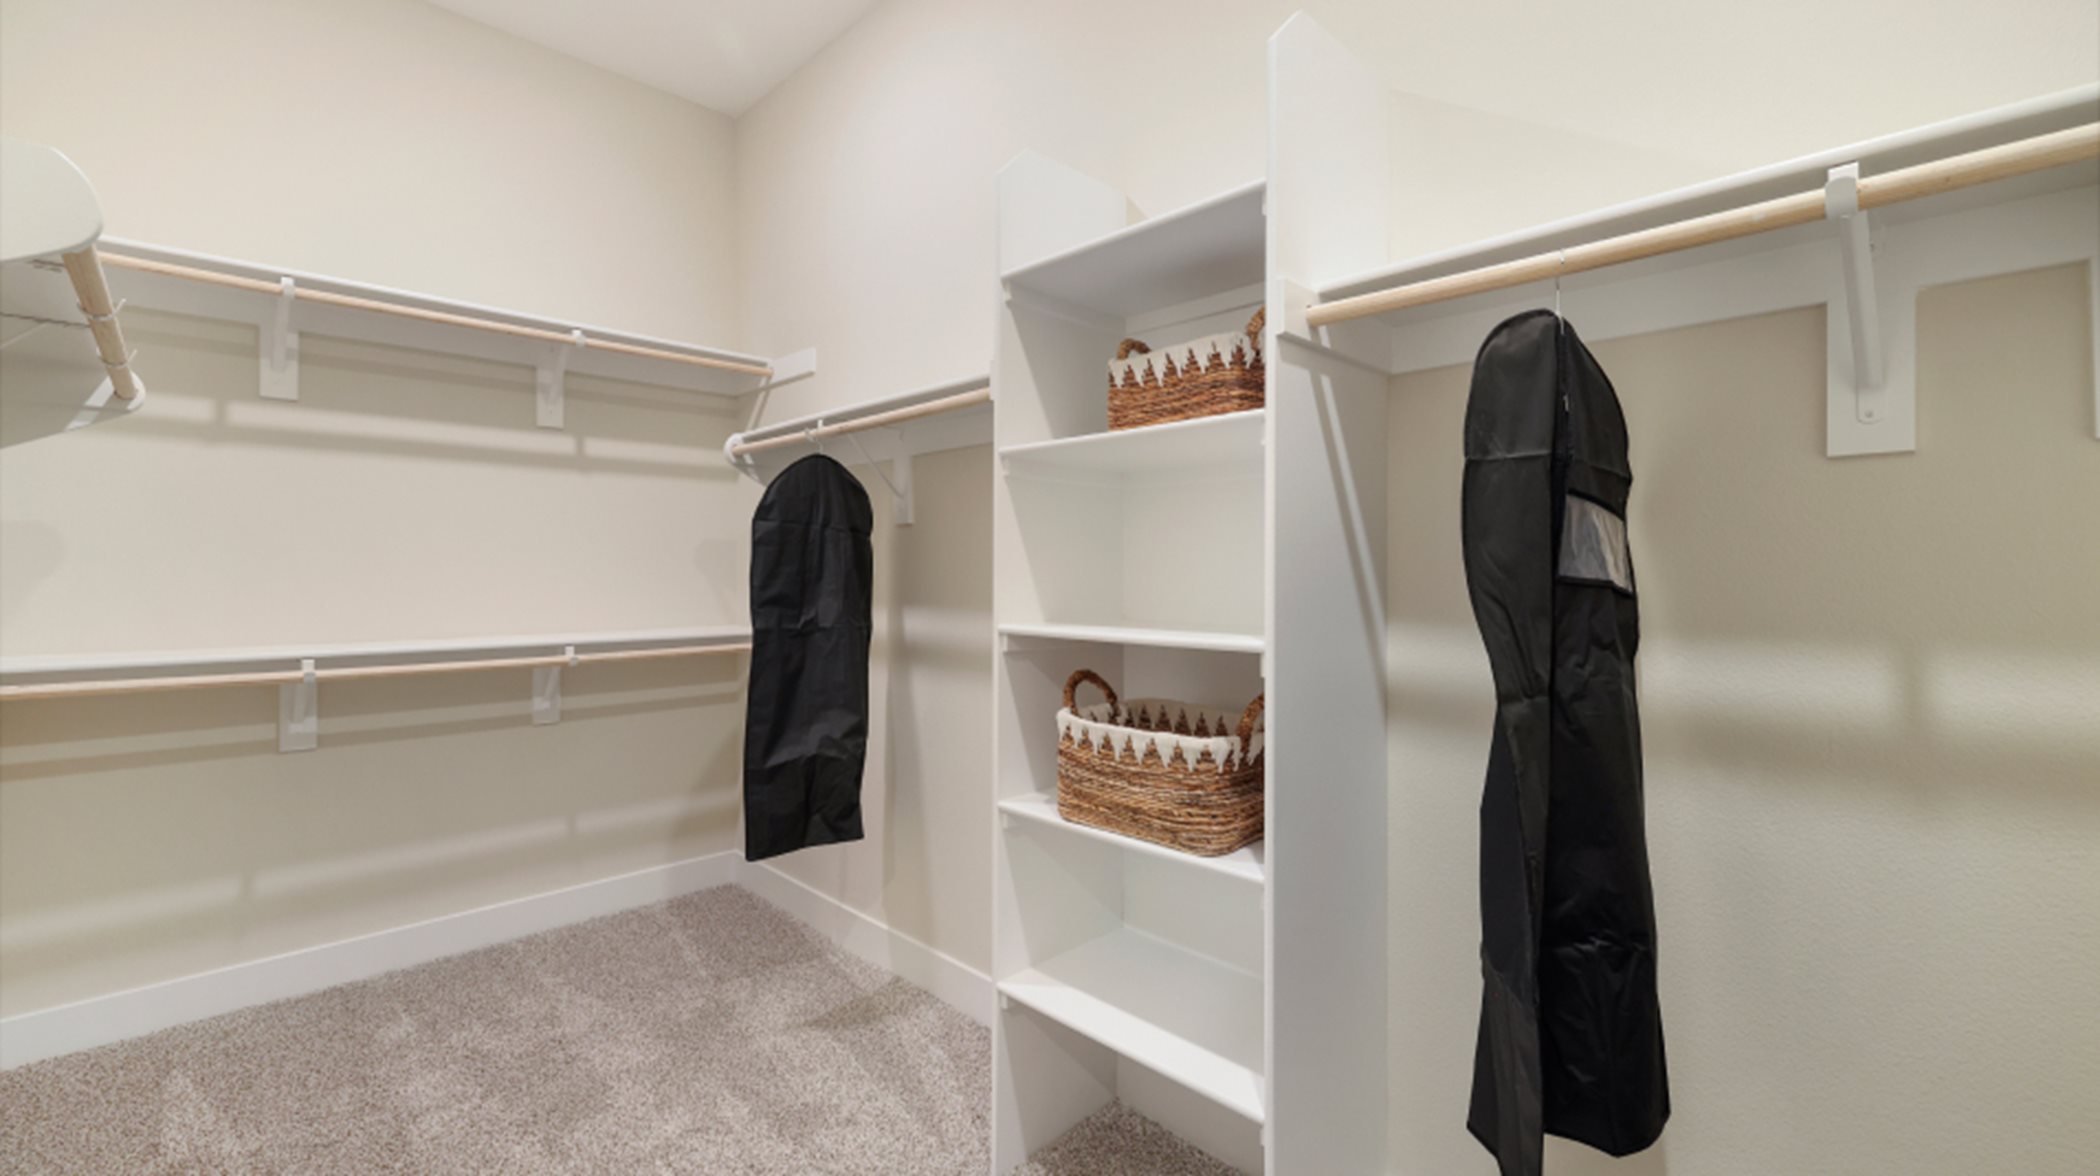 Owner's suite walk-in closet interior